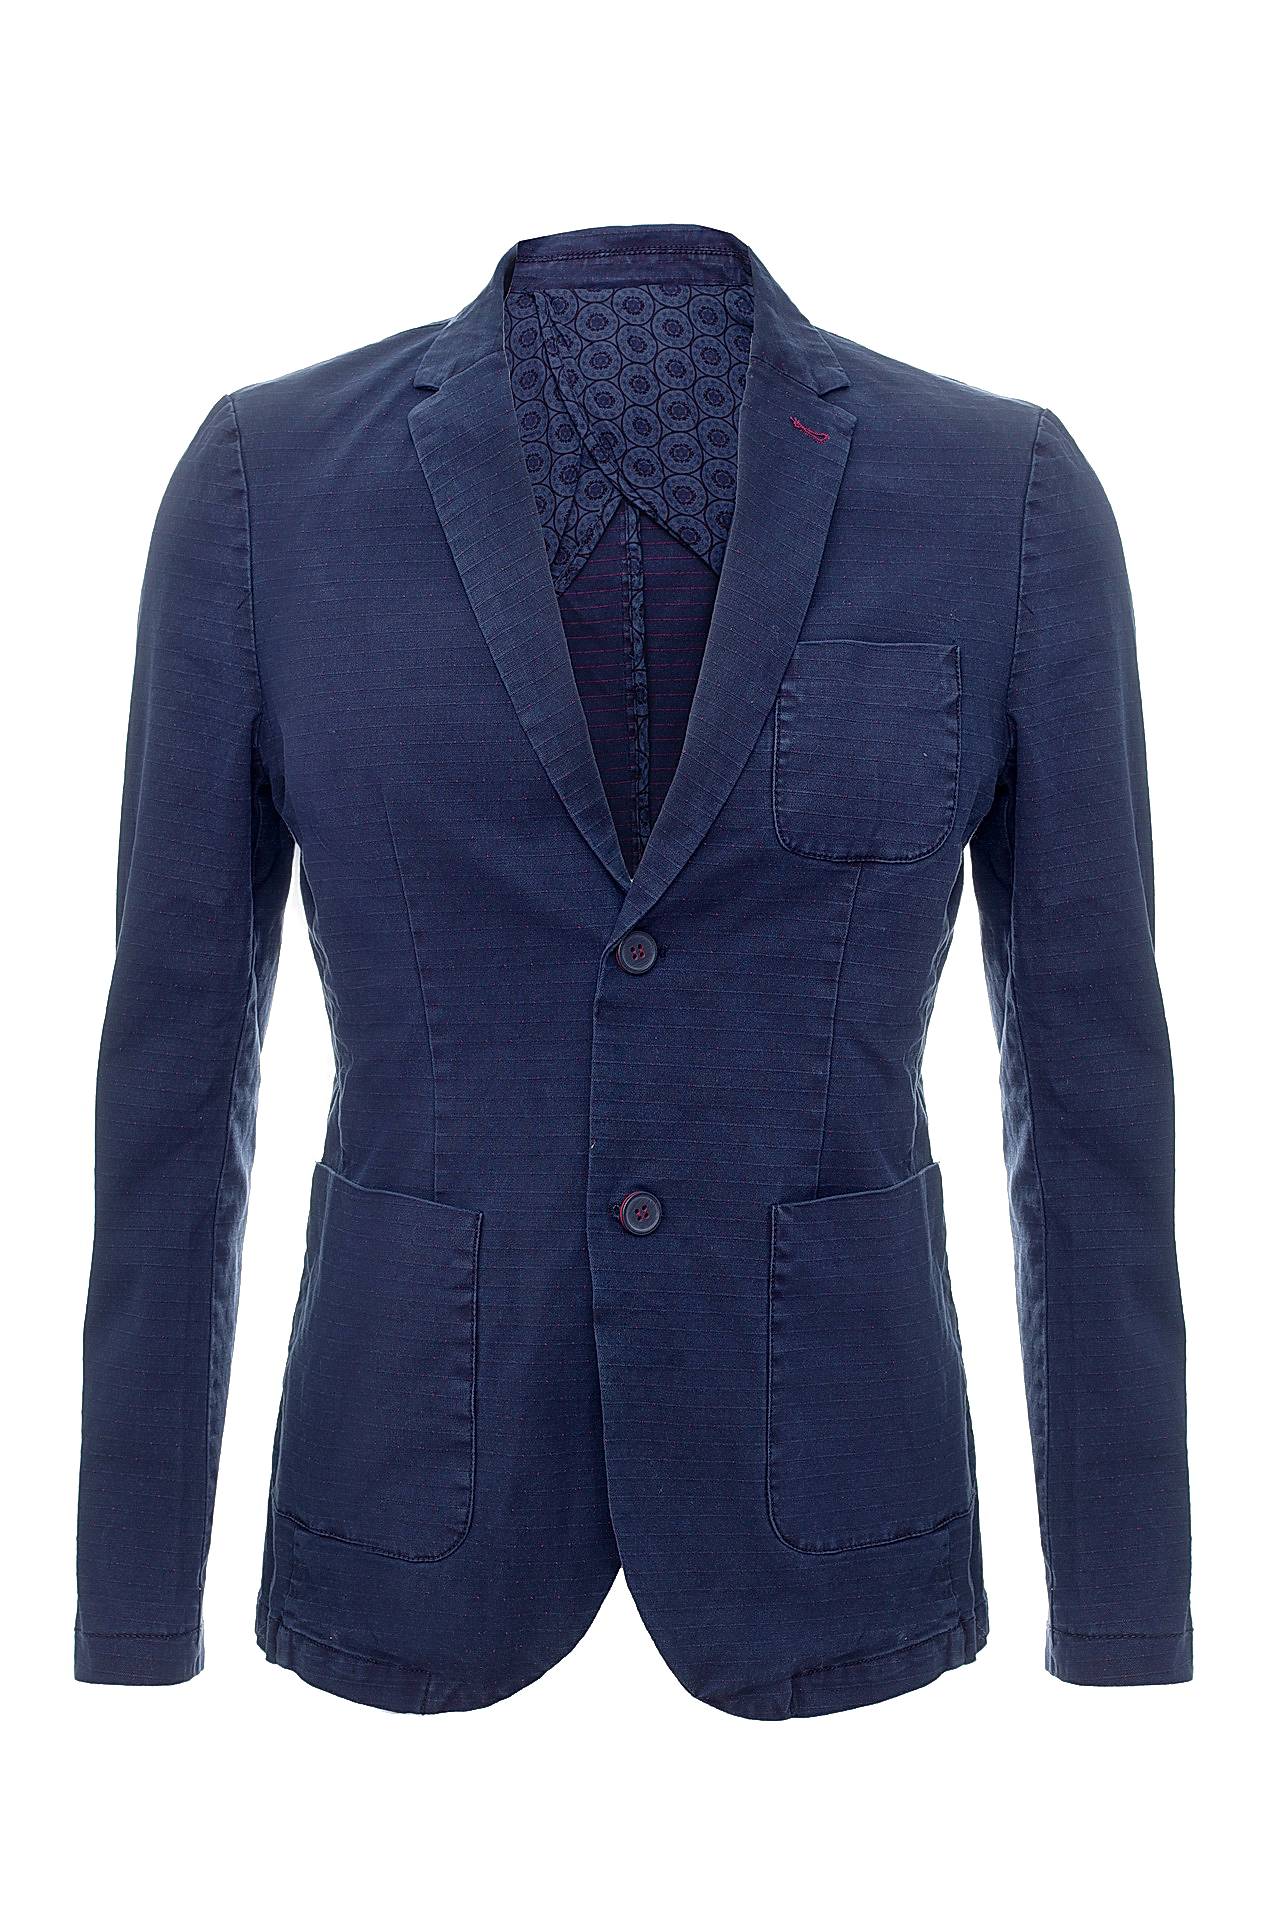 Одежда мужская Пиджак GIANNI LUPO (8990/16.2). Купить за 9900 руб.